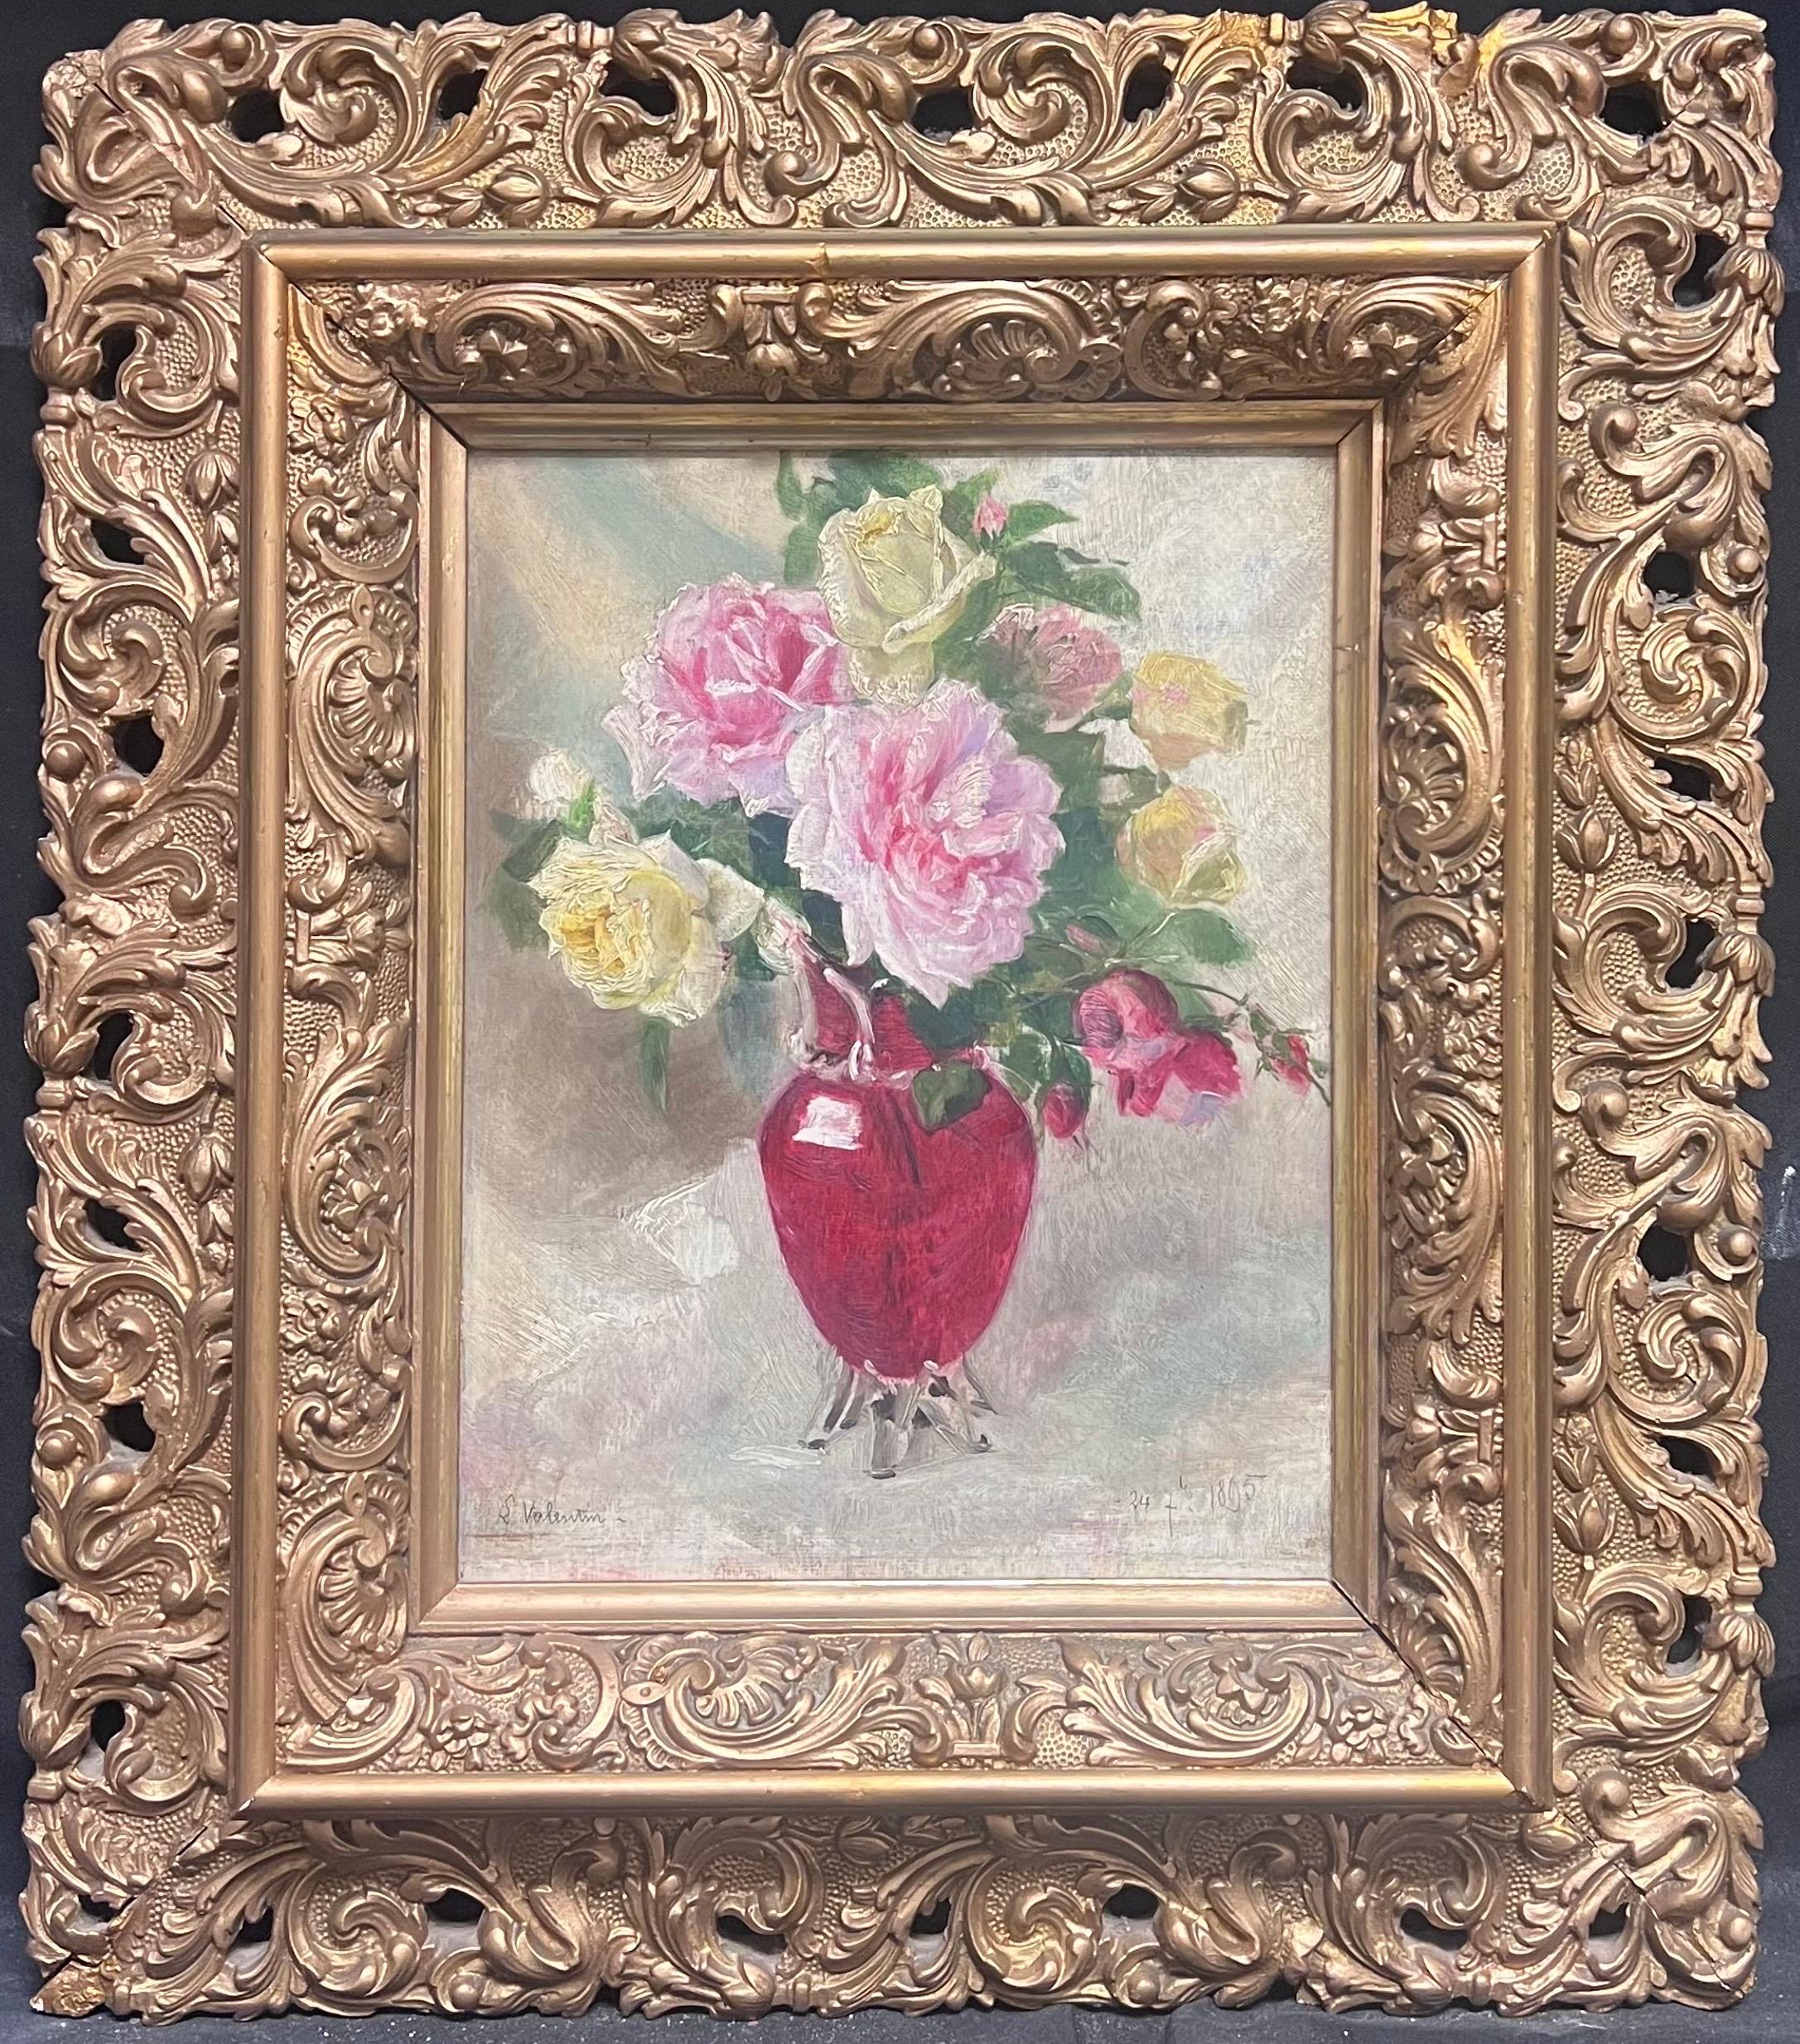 Interior Painting French Late 19th Century School - Roses impressionnistes du 19ème siècle dans un vase rouge dans un cadre doré ancien